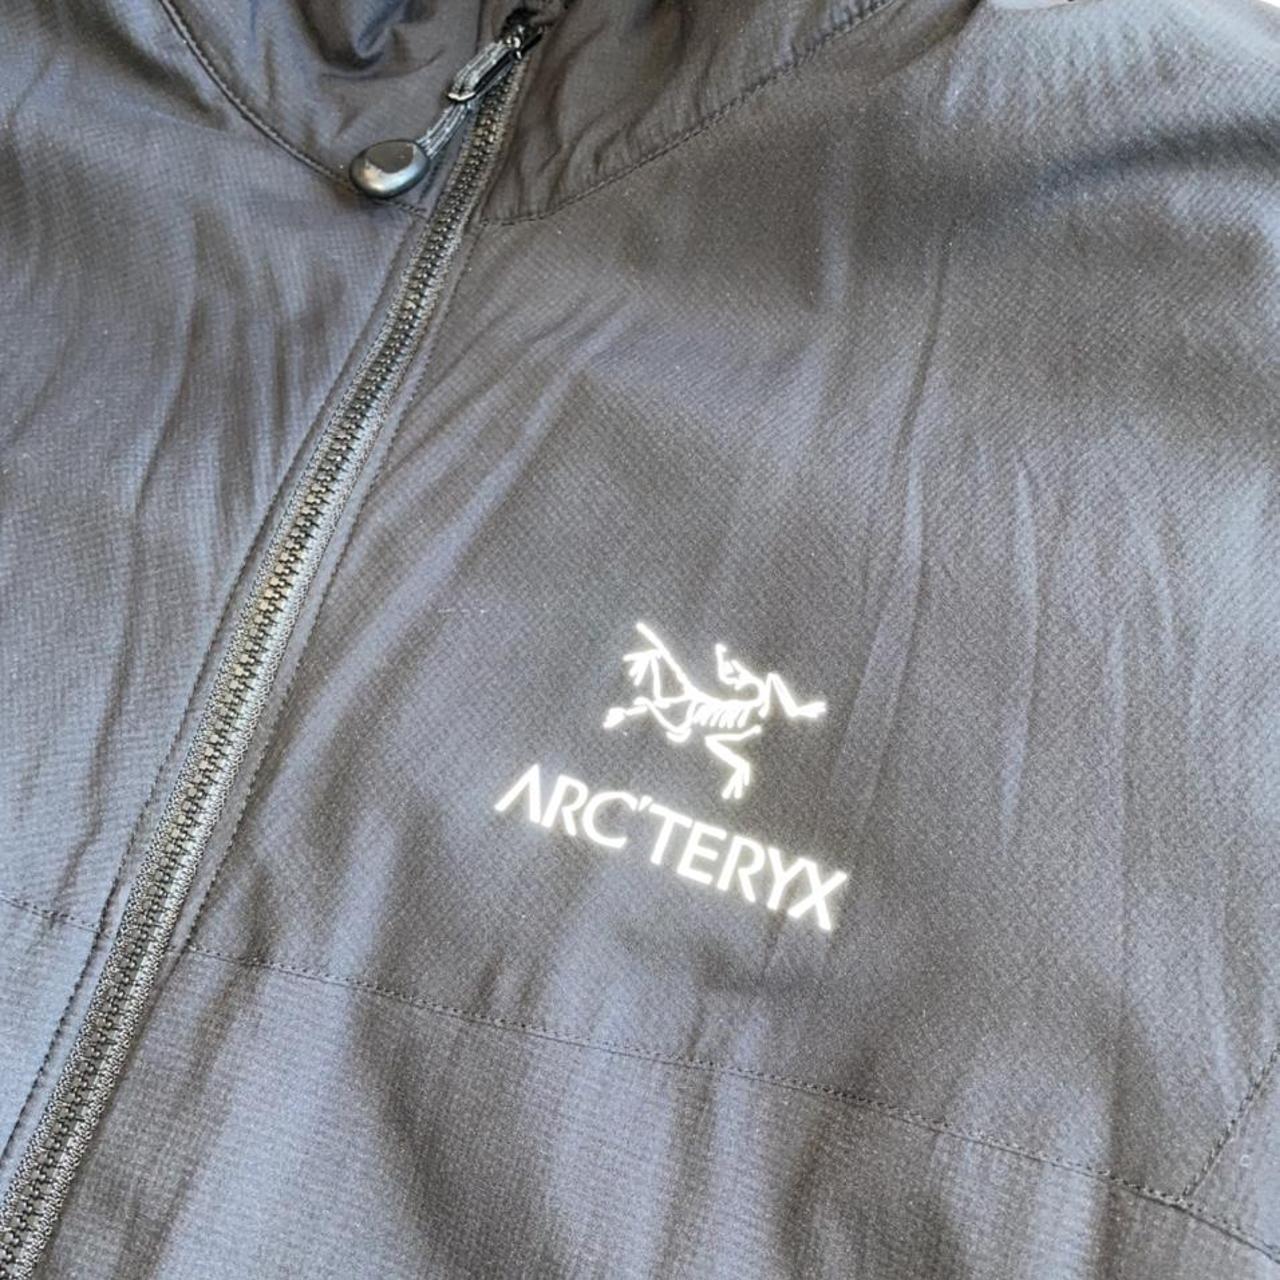 Black Arcteryx Arc’teryx Atom LT Jacket No Hood.... - Depop